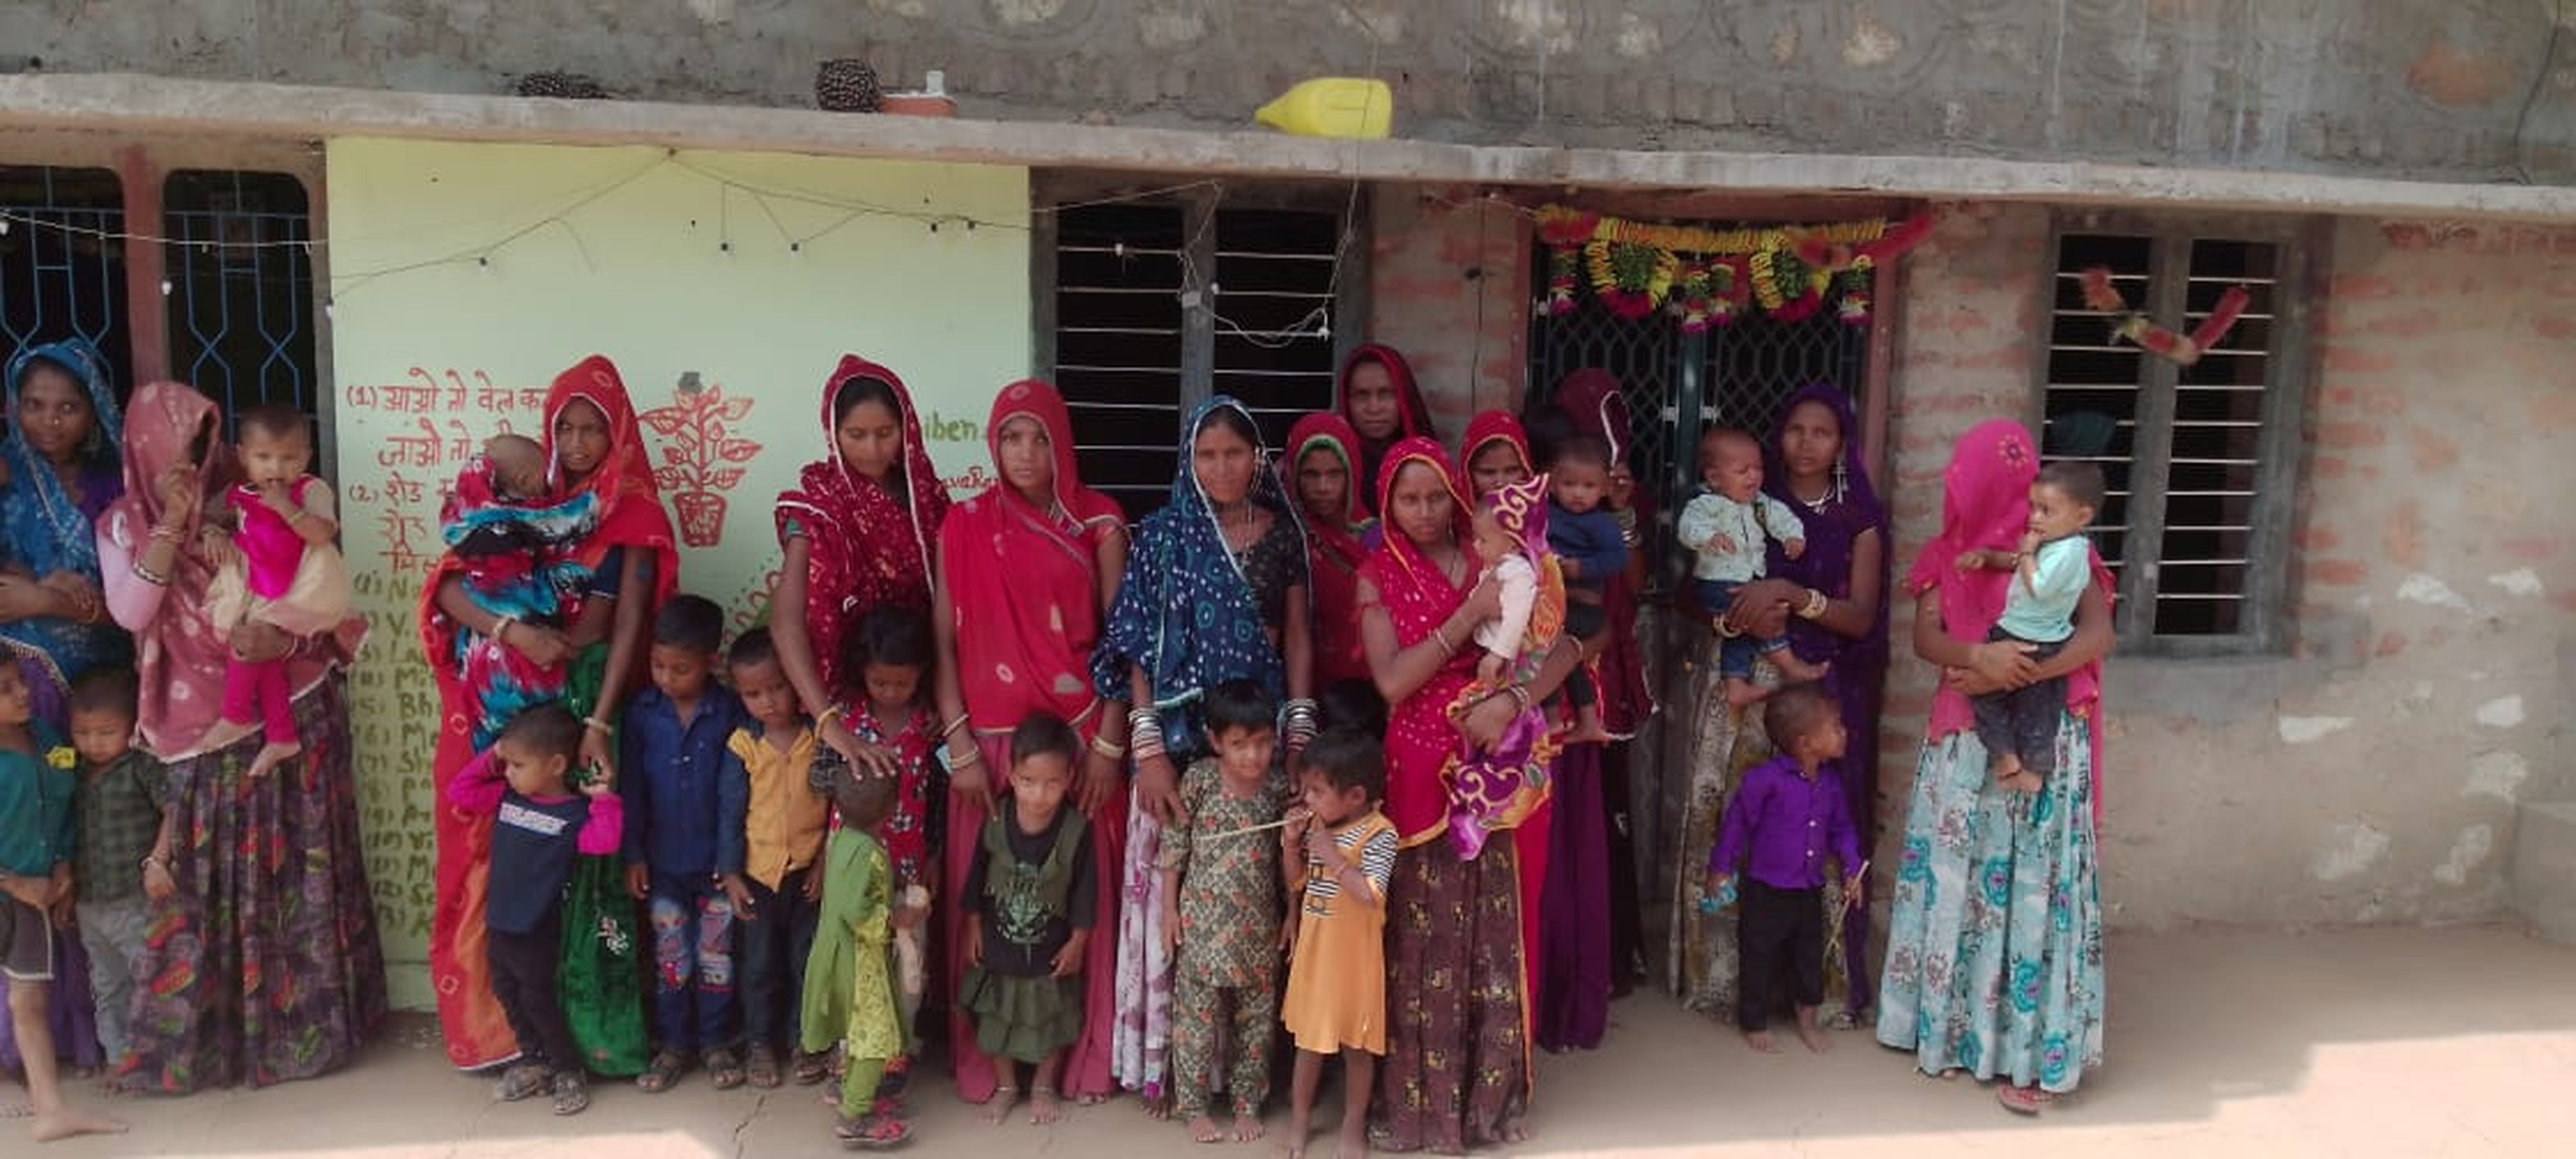 आंगनबाड़ी केन्द्र के अभाव में मोरिया फली की महिलाएं व बच्चे पूरक पोषाहार से वंचित